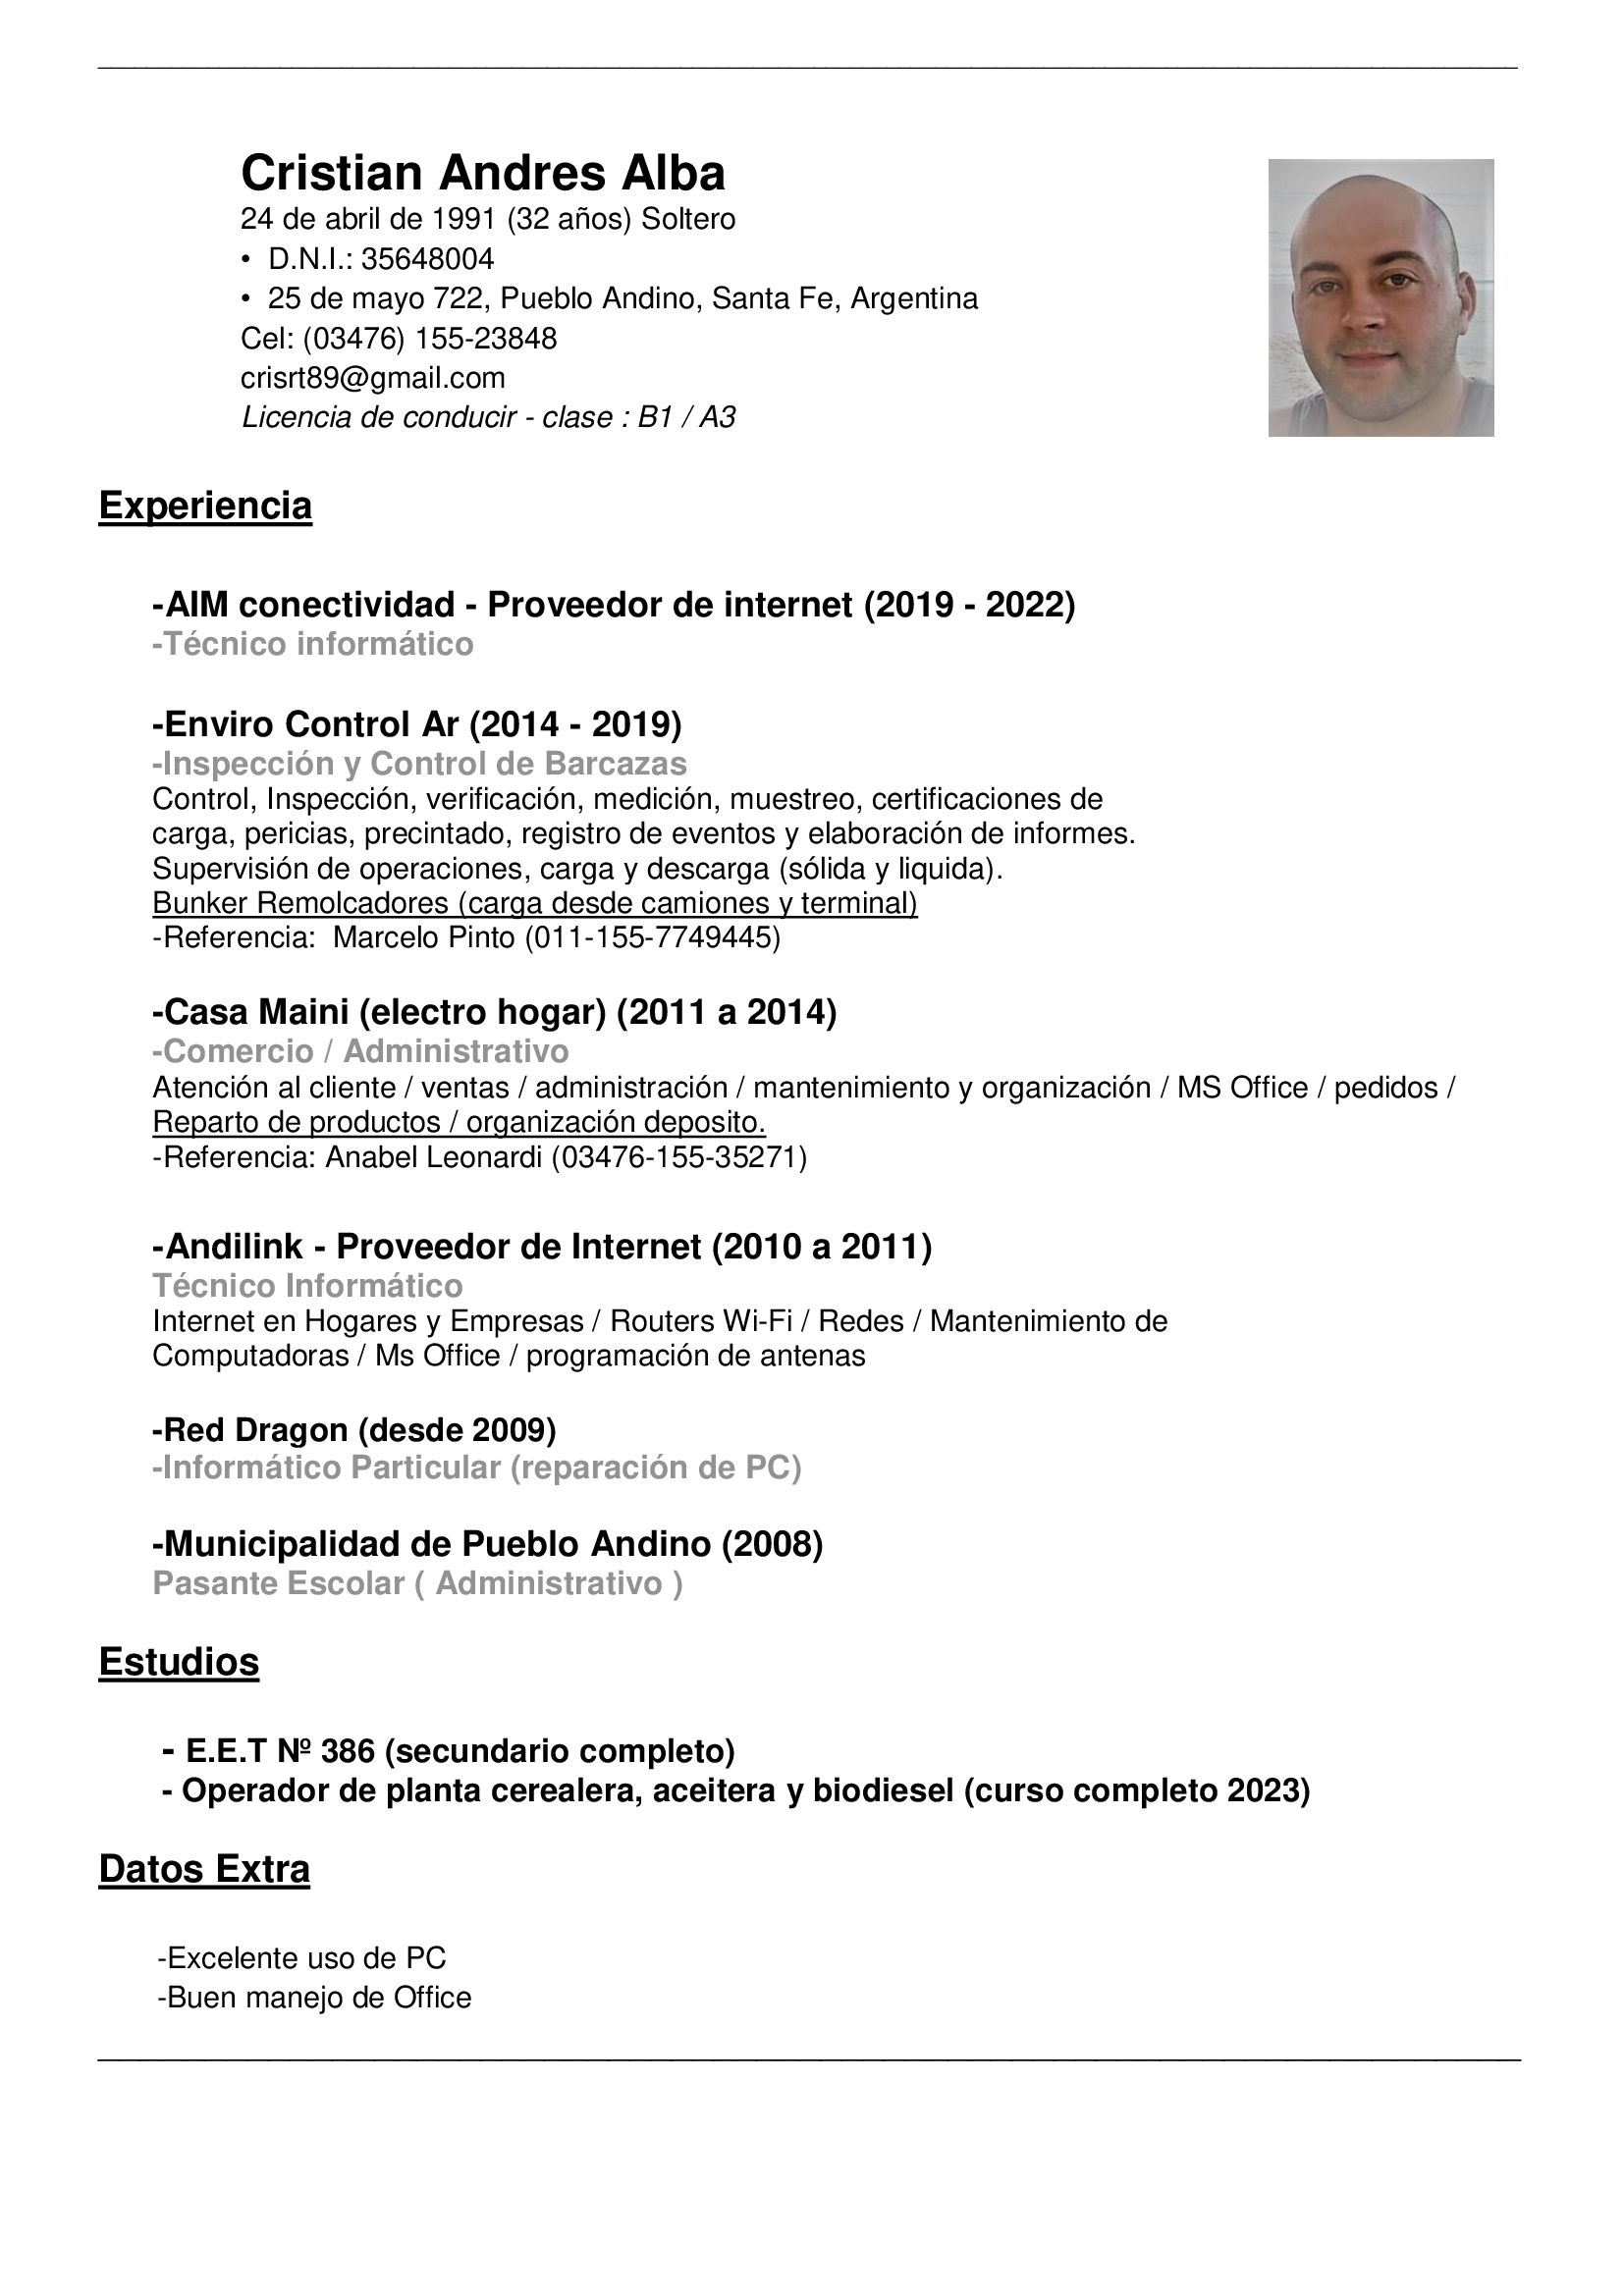 Cristian Andres Alba

24 de abril de 1991 (32 anos) Soltero

+ D.N.I.: 35648004

+ 25 de mayo 722, Pueblo Andino, Santa Fe, Argentina
Cel: (03476) 155-23848

crisrt89@gmail.com

Licencia de conducir - clase : B1 / A3

Experiencia

-AIM conectividad - Proveedor de internet (2019 - 2022)
-Técnico informatico

-Enviro Control Ar (2014 - 2019)

-Inspeccion y Control de Barcazas

Control, Inspeccion, verificacion, medicion, muestreo, certificaciones de
carga, pericias, precintado, registro de eventos y elaboracién de informes.
Supervision de operaciones, carga y descarga (sélida y liquida).

Bunker Remolcadores (carga desde camiones y terminal

-Referencia: Marcelo Pinto (011-155-7749445)

-Casa Maini (electro hogar) (2011 a 2014)

-Comercio / Administrativo

Atencion al cliente / ventas / administracion / mantenimiento y organizacion / MS Office / pedidos /
Reparto de productos / organizacion deposito.

-Referencia: Anabel Leonardi (03476-155-35271)

 

-Andilink - Proveedor de Internet (2010 a 2011)

Técnico Informatico

Internet en Hogares y Empresas / Routers Wi-Fi / Redes / Mantenimiento de
Computadoras / Ms Office / programacién de antenas

-Red Dragon (desde 2009)
-Informatico Particular (reparacion de PC)

-Municipalidad de Pueblo Andino (2008)
Pasante Escolar ( Administrativo )

Estudios

- E.E.T N2 386 (secundario completo)
- Operador de planta cerealera, aceitera y biodiesel (curso completo 2023)

Datos Extra

-Excelente uso de PC
-Buen manejo de Office